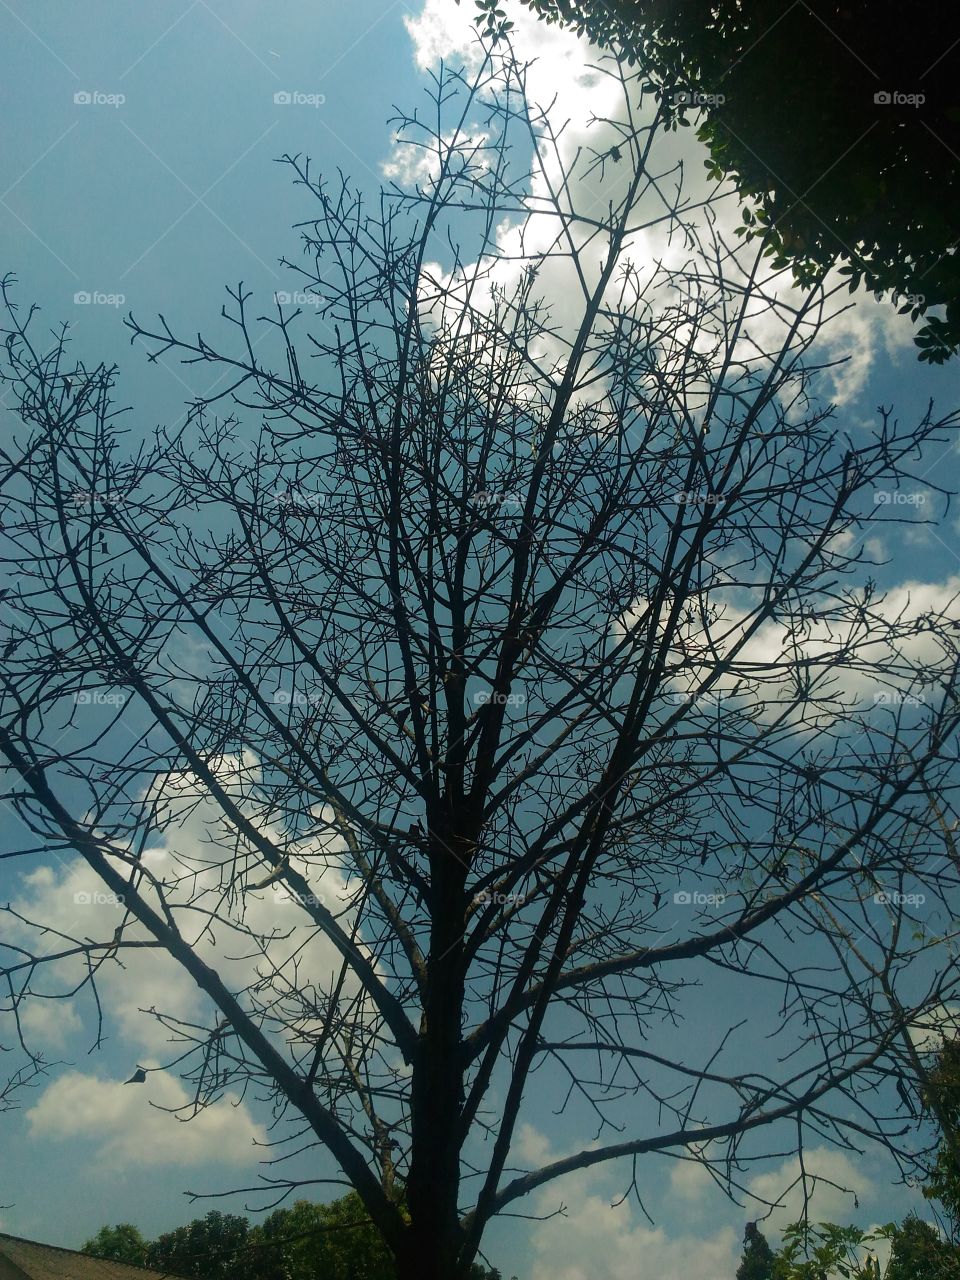 tree no leaves